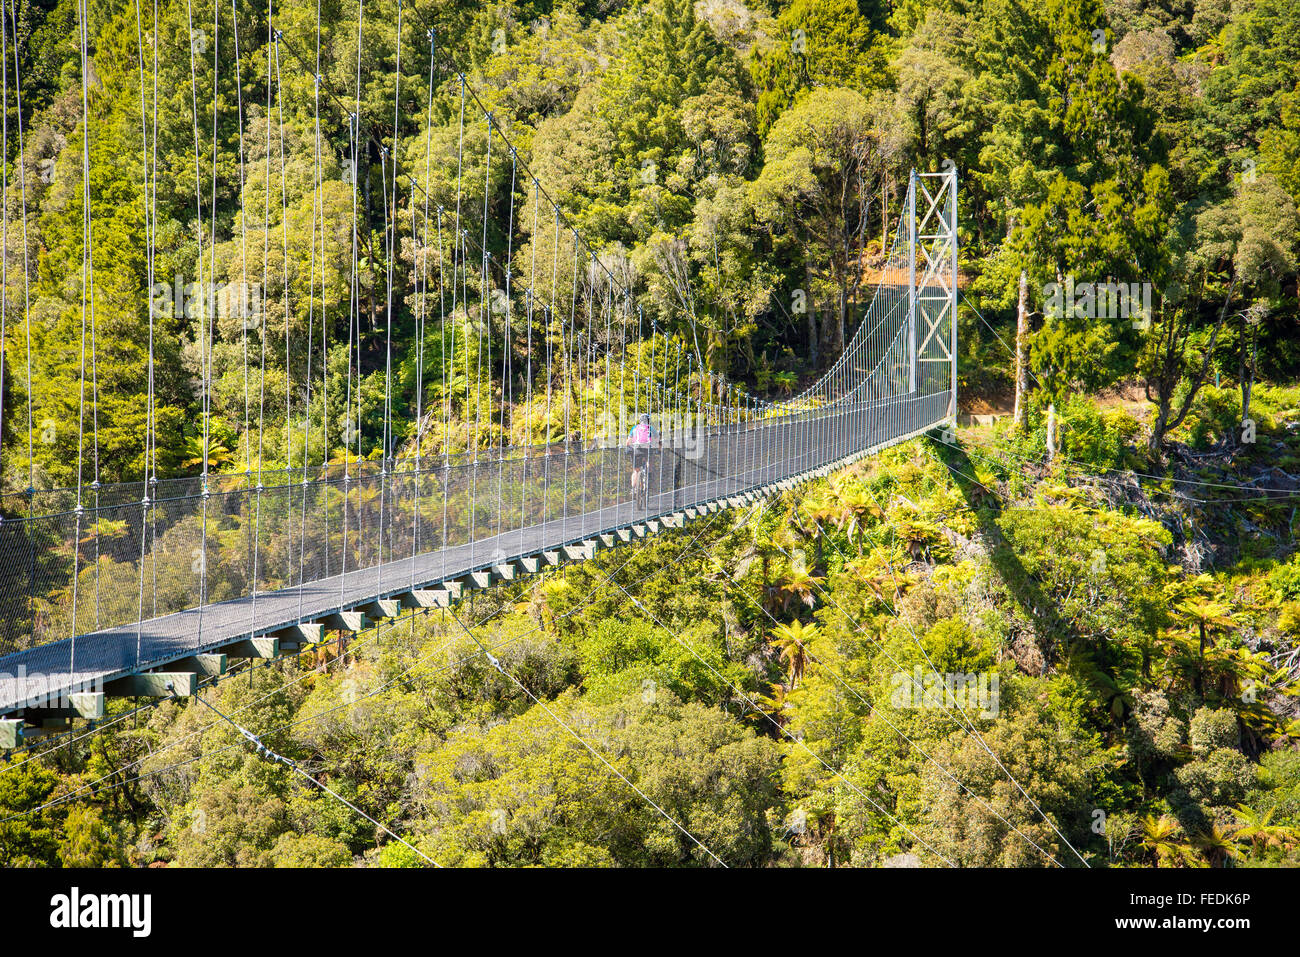 Vélo de montagne traversant le pont suspendu de Maramataha sur le sentier du Bois dans le Parc Forestier de Pureora Ile du Nord Nouvelle Zélande Banque D'Images